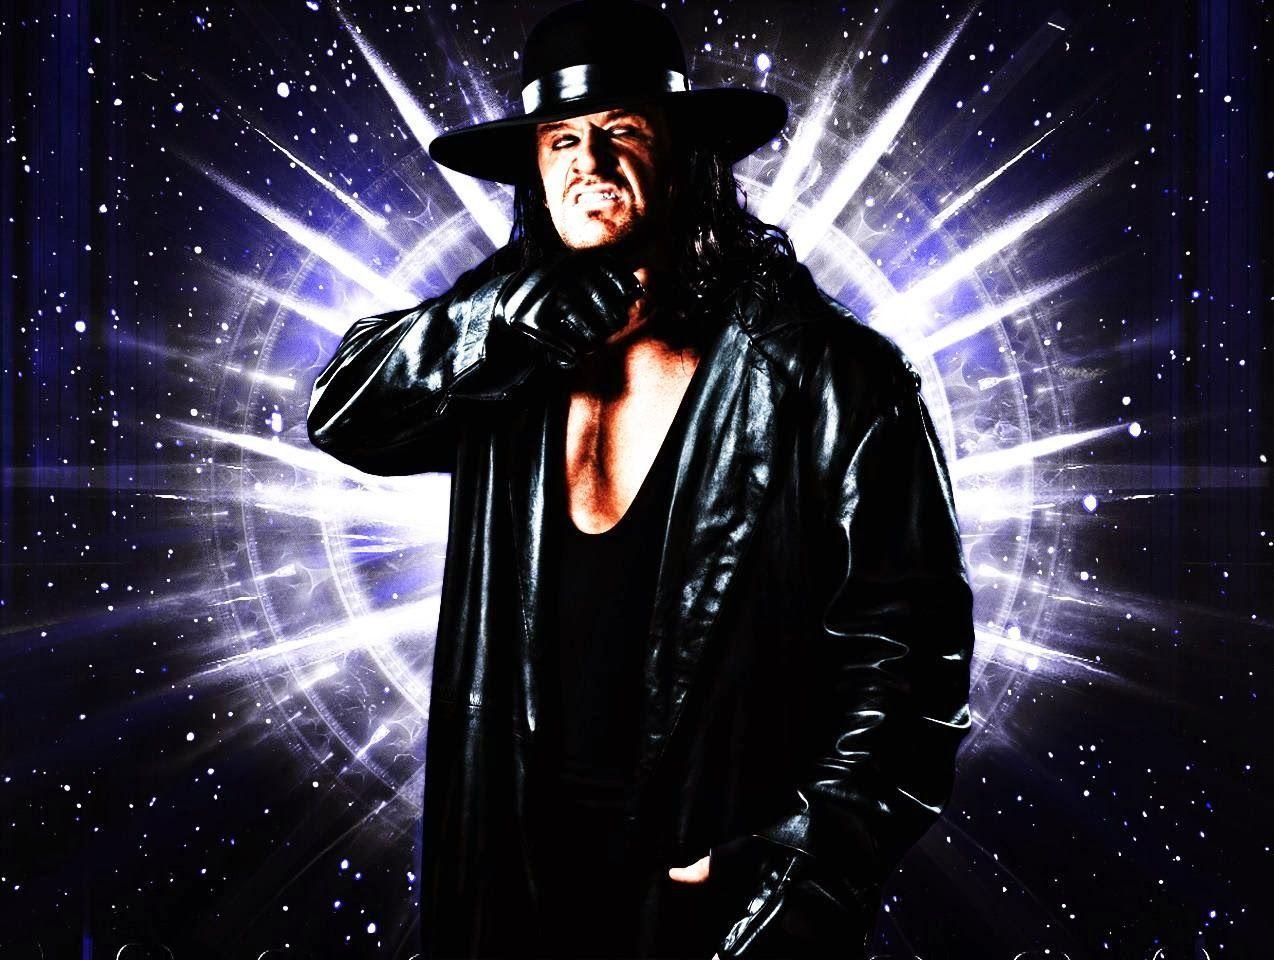 Undertaker HD Wallpaper Free Download. WWE HD WALLPAPER FREE